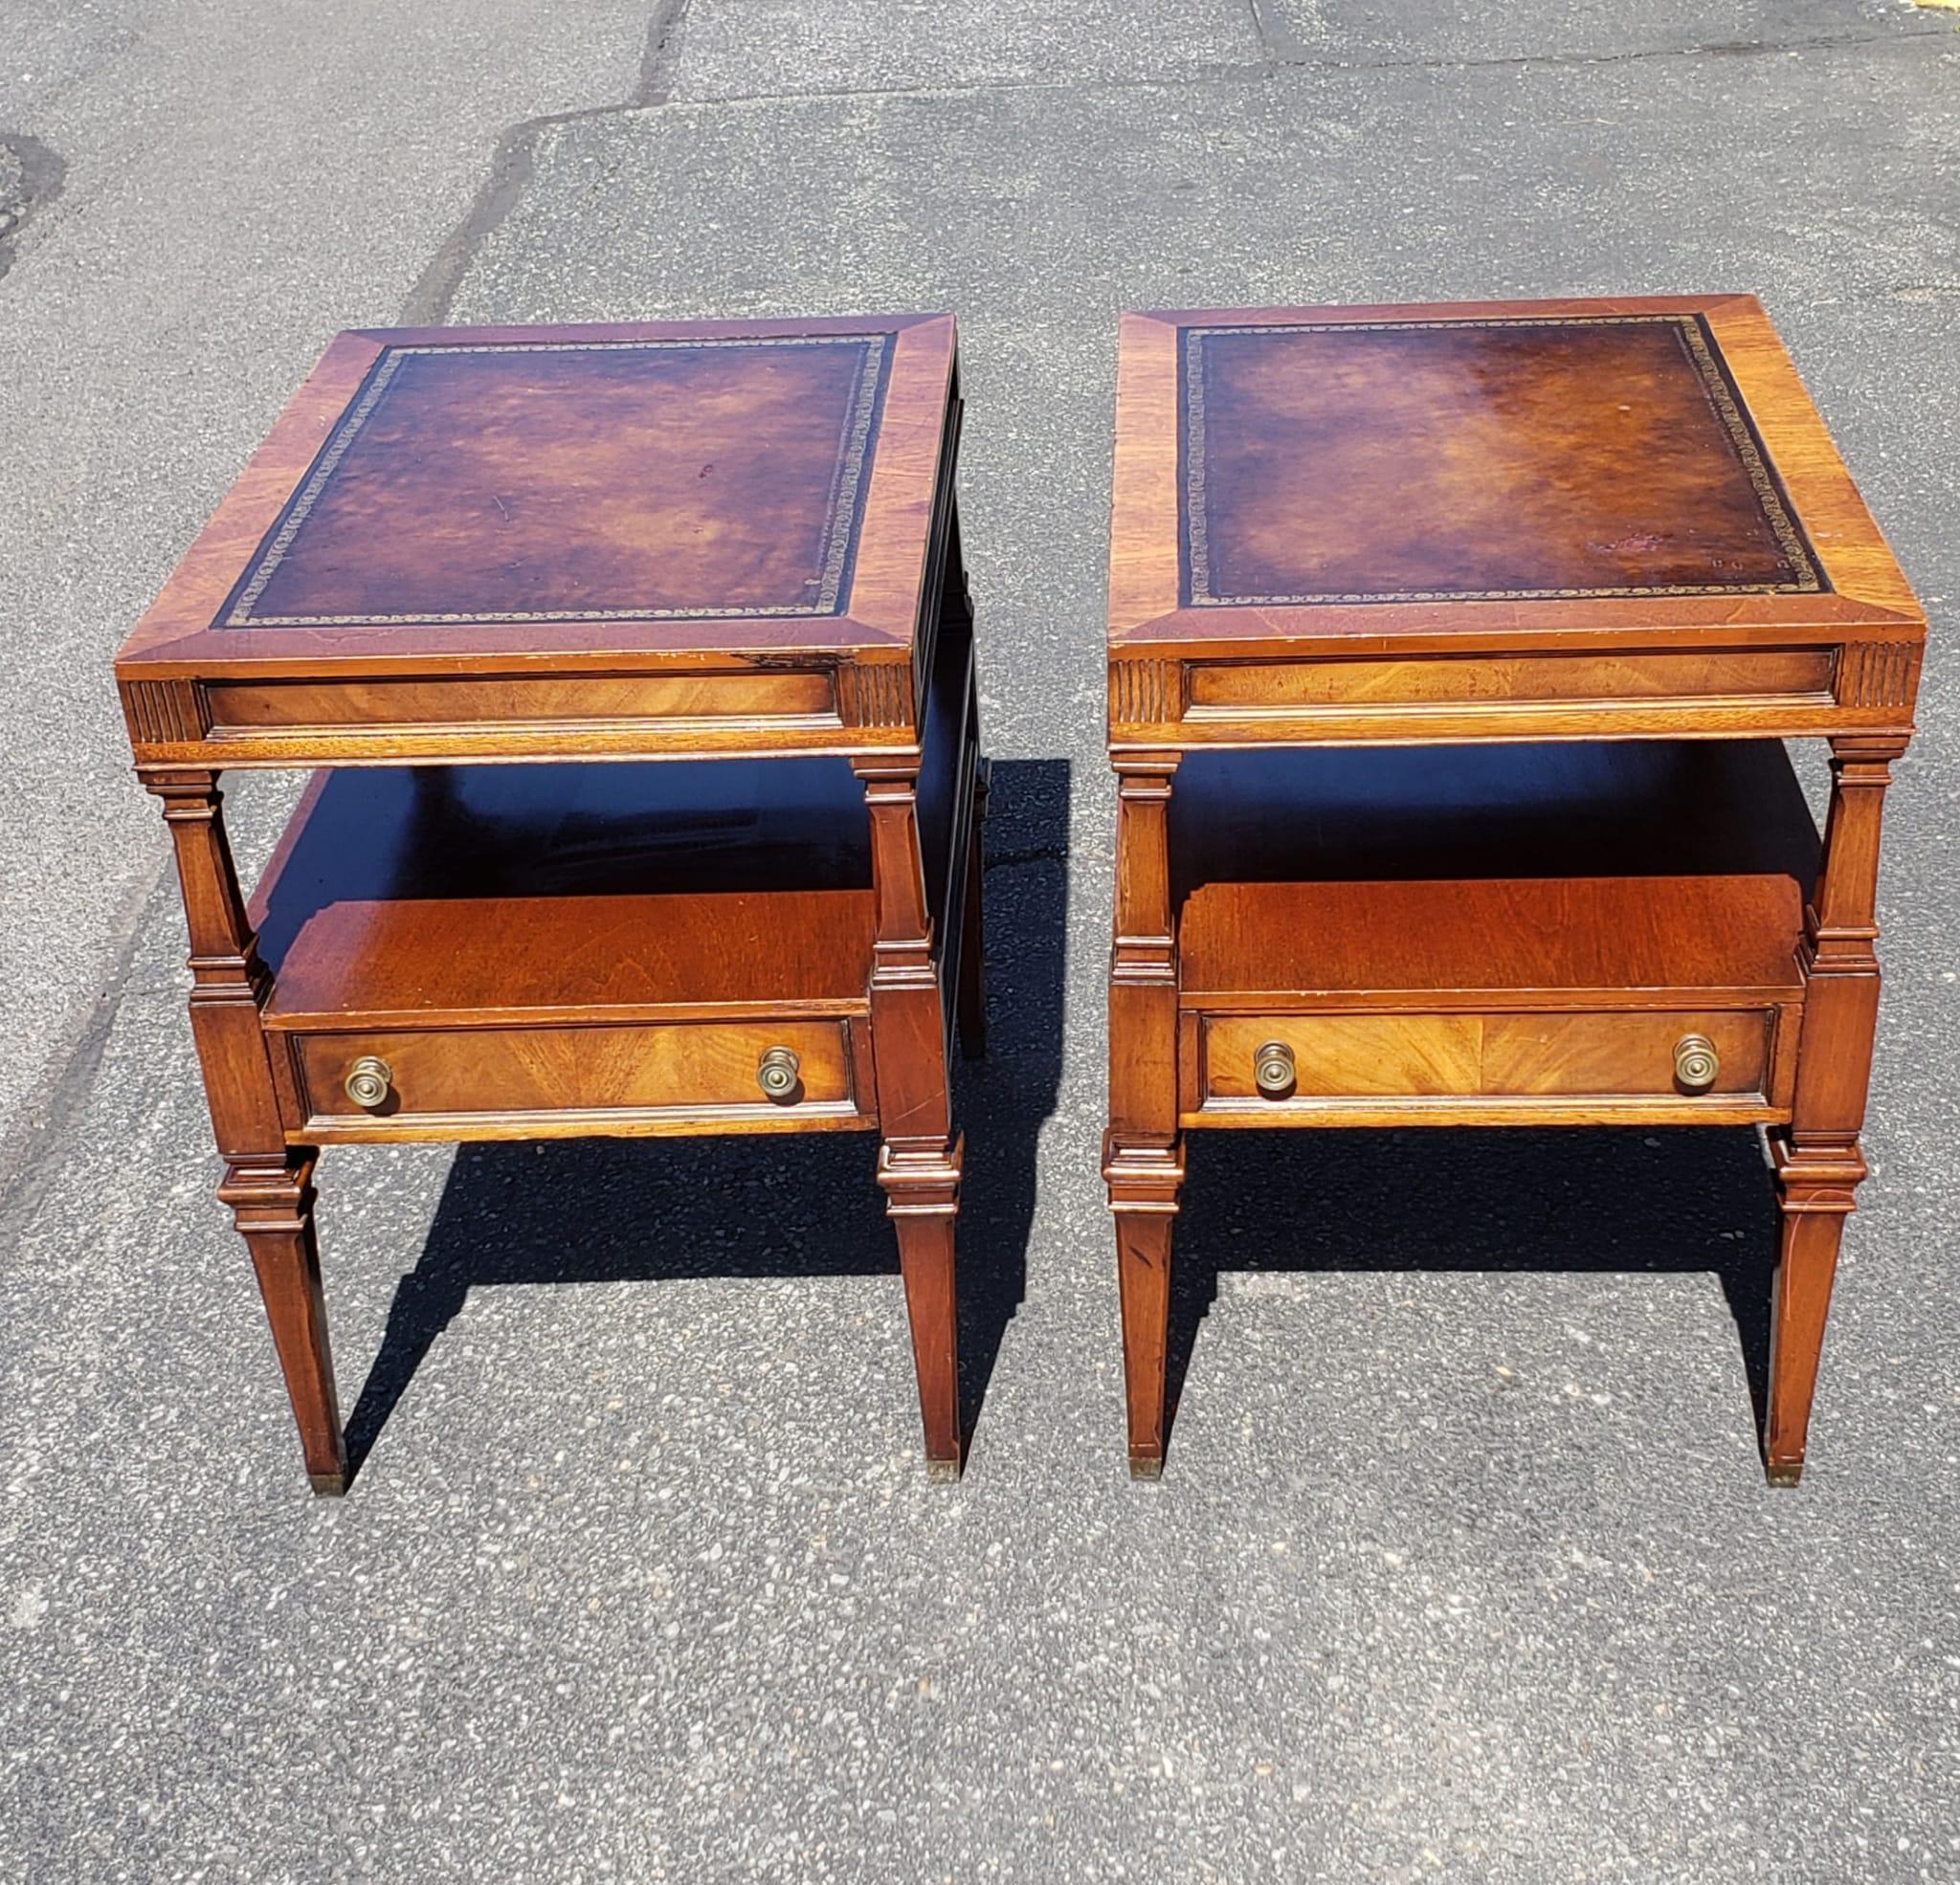 Mitte des 20. Jahrhunderts Weiman Furniture Heirloom zwei Ebenen Mahagoni und Tooled oben o e Schublade Seiten Tisch Paar. In sehr gutem Vintage-Zustand.